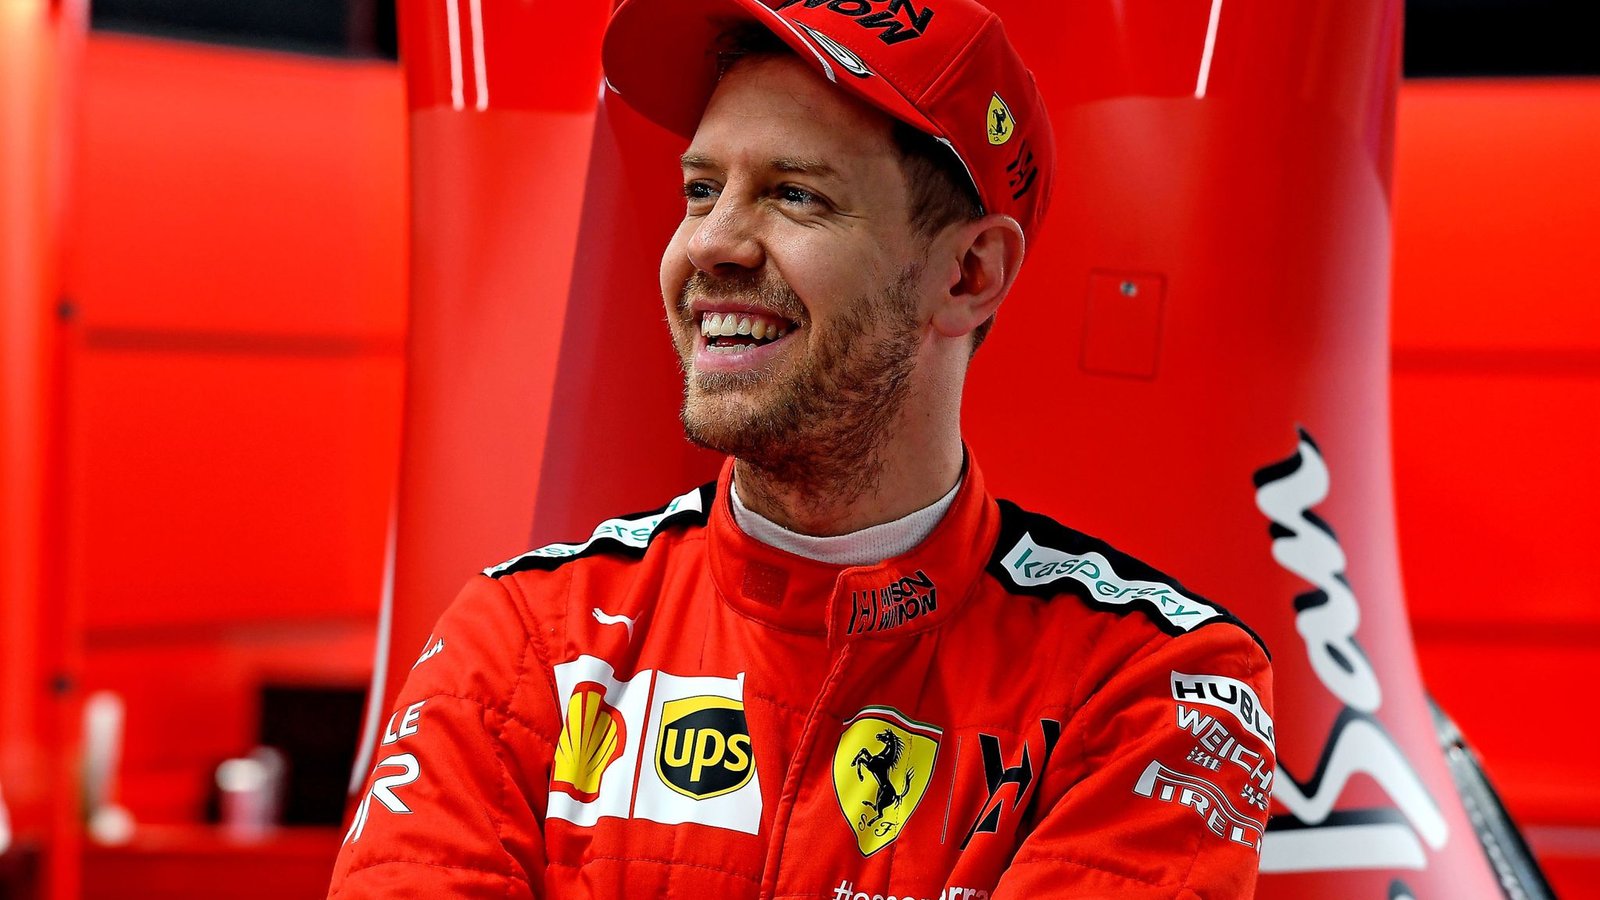 Sebastian Vettel retirement 2022